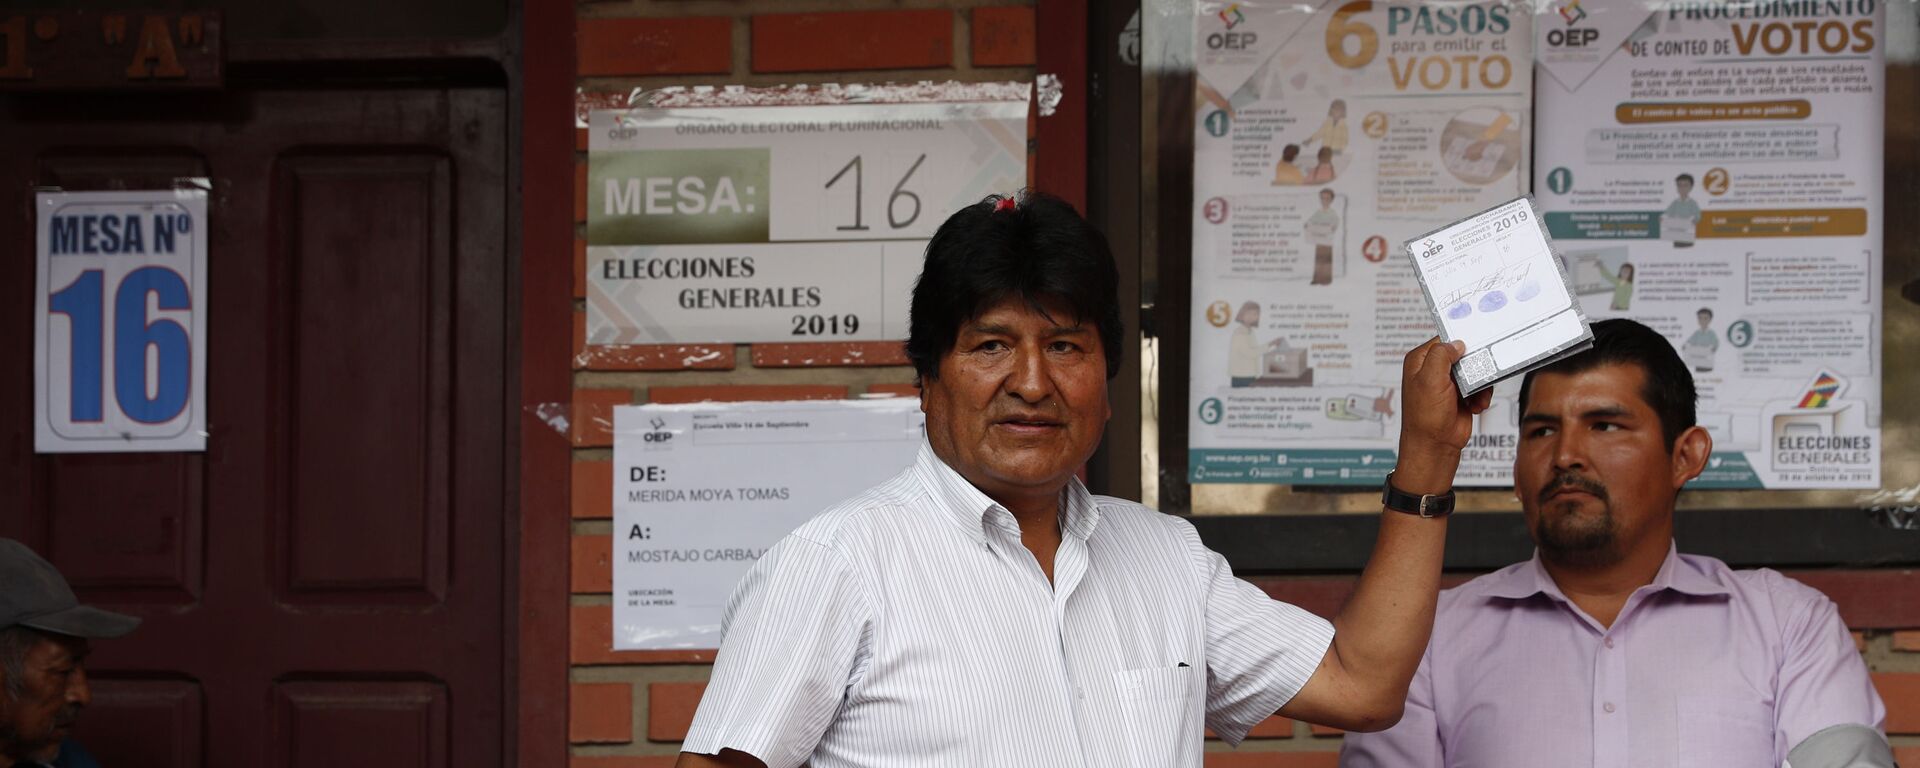 Evo Morales votando durante las elecciones de octubre de 2019 en Bolivia - Sputnik Mundo, 1920, 27.07.2021